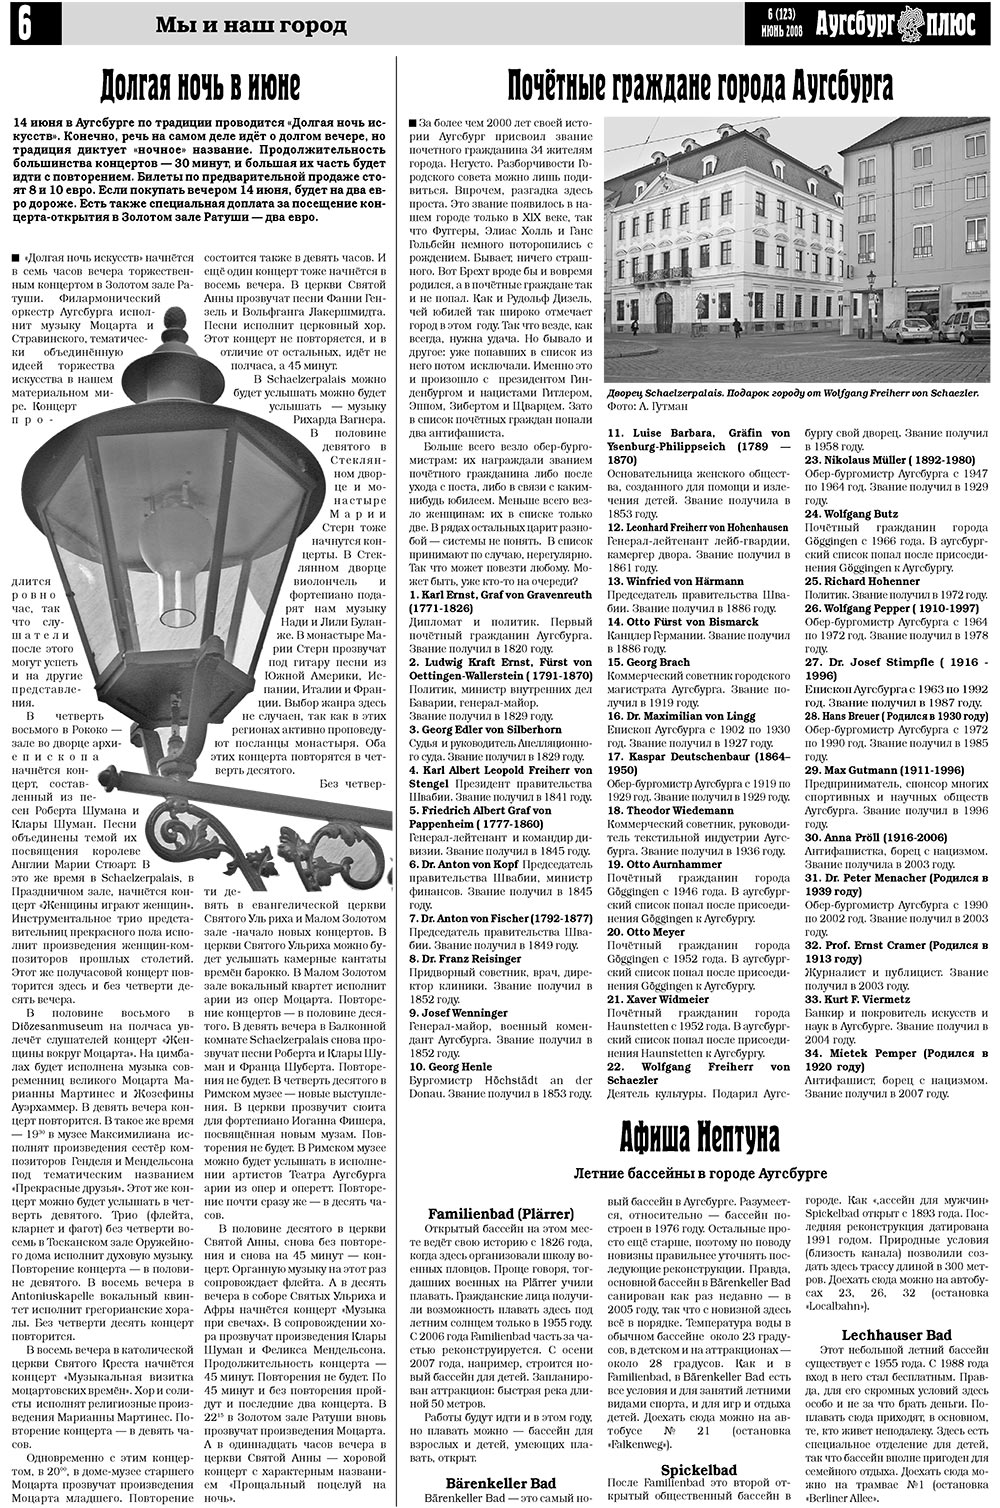 Германия плюс (газета). 2008 год, номер 6, стр. 8